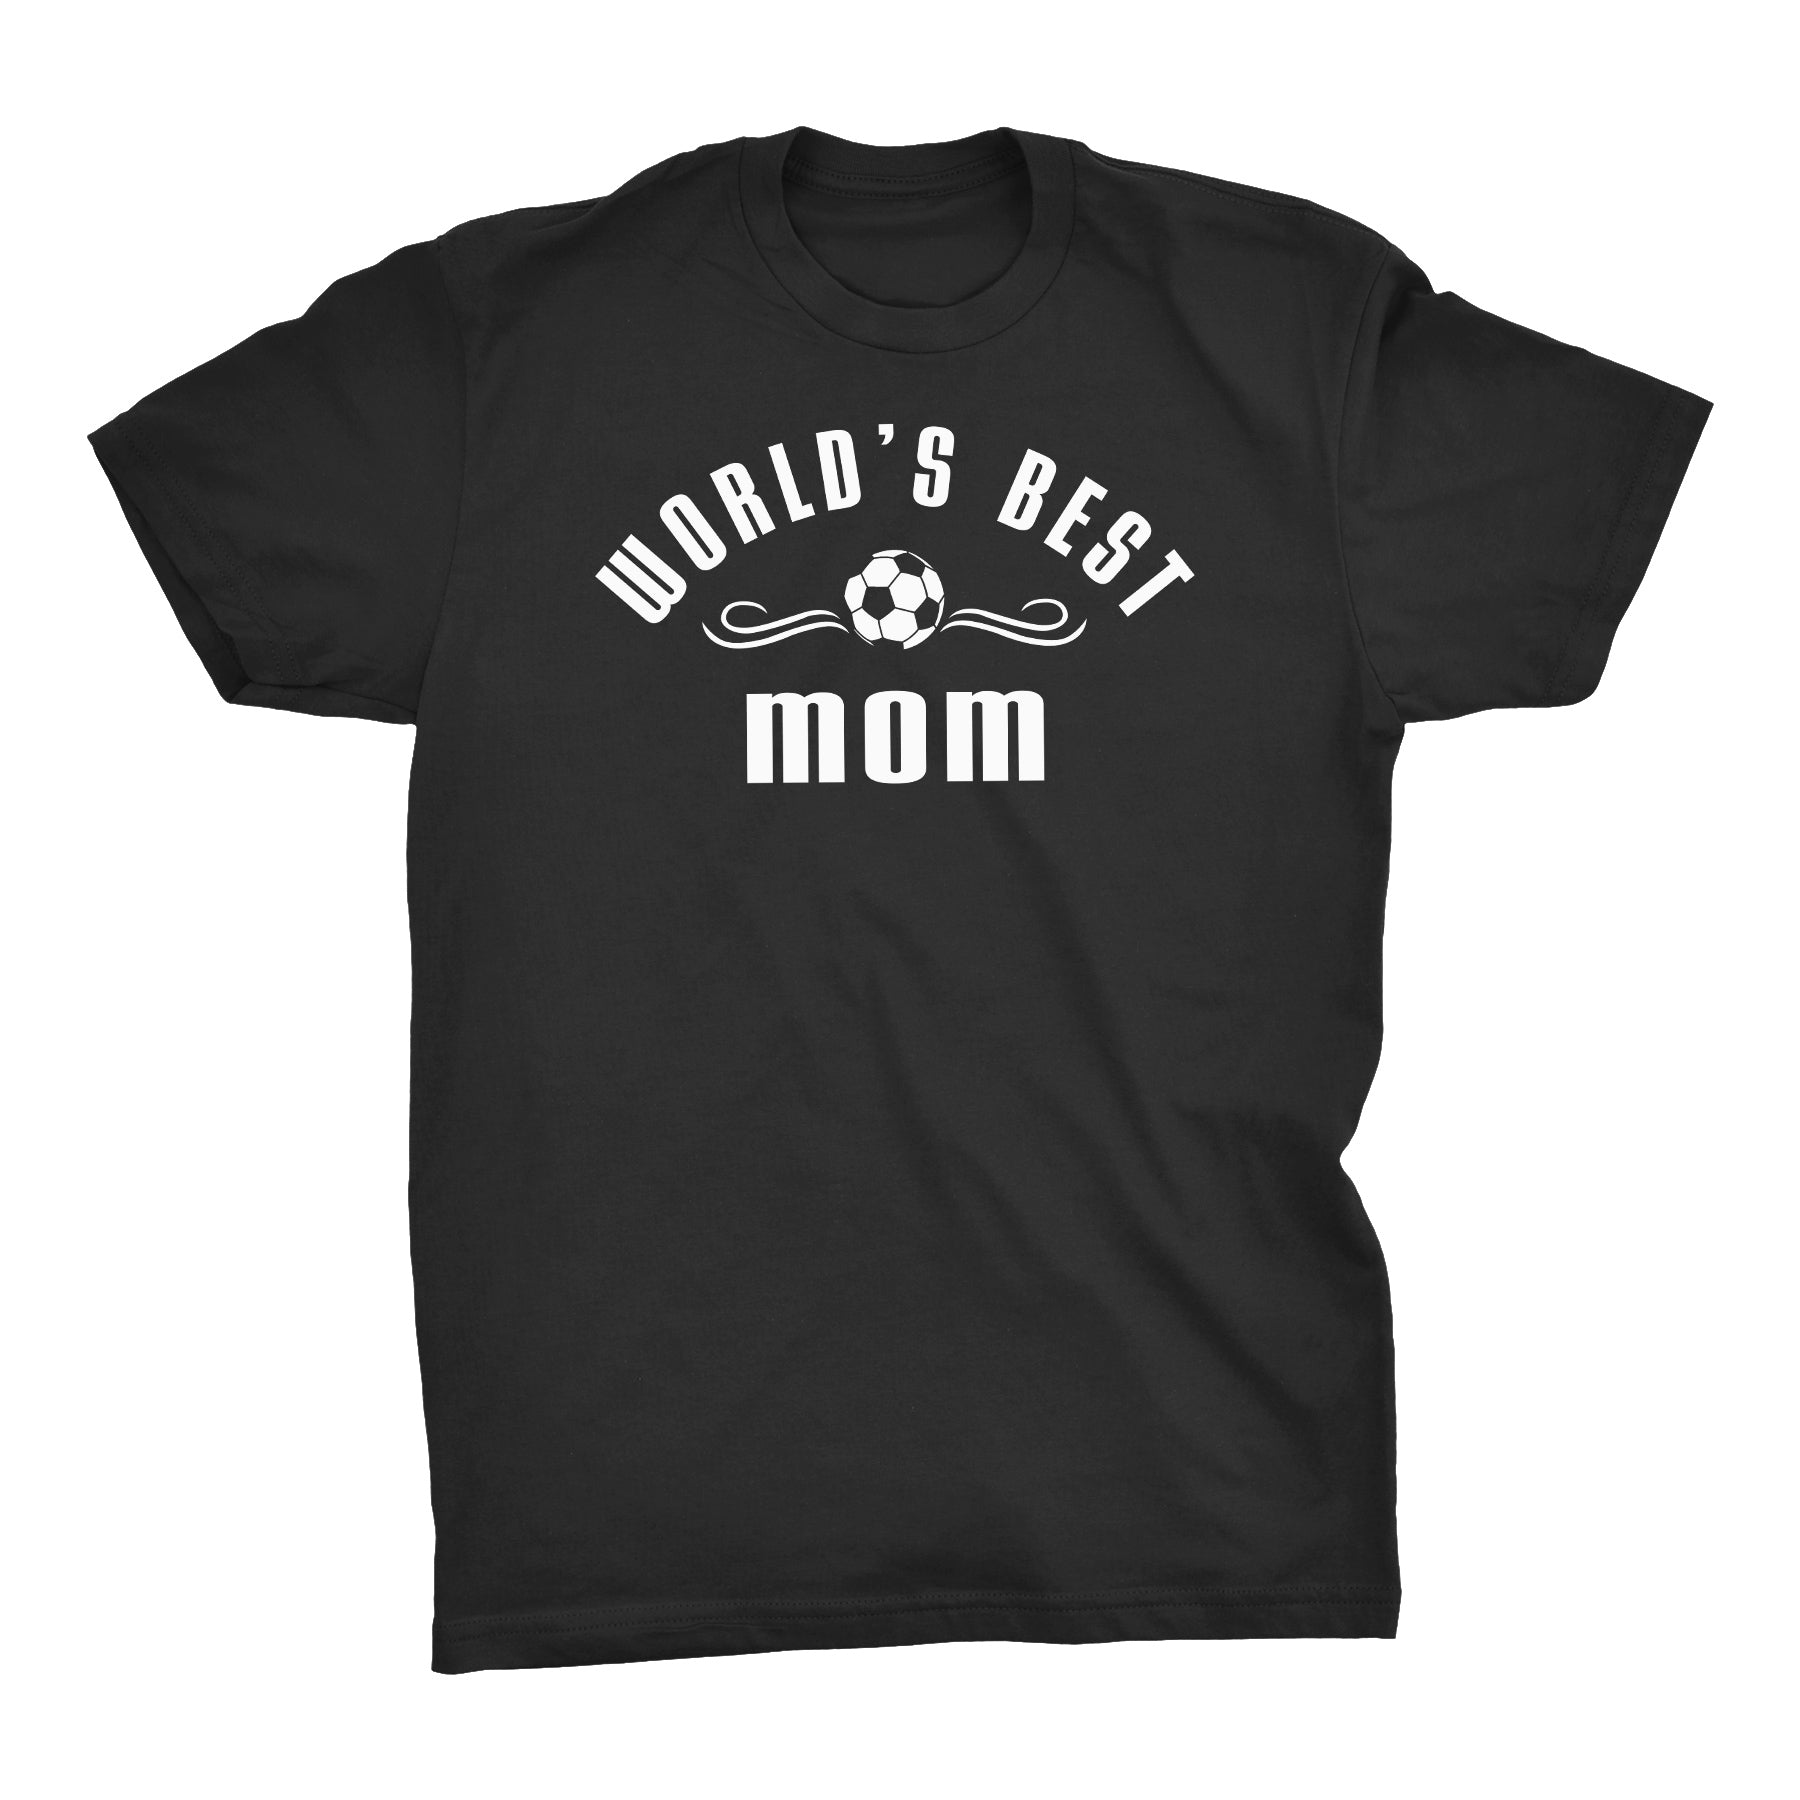 Soccer Mom Shirts, & More |ShirtInvaders.com – Shirt Invaders